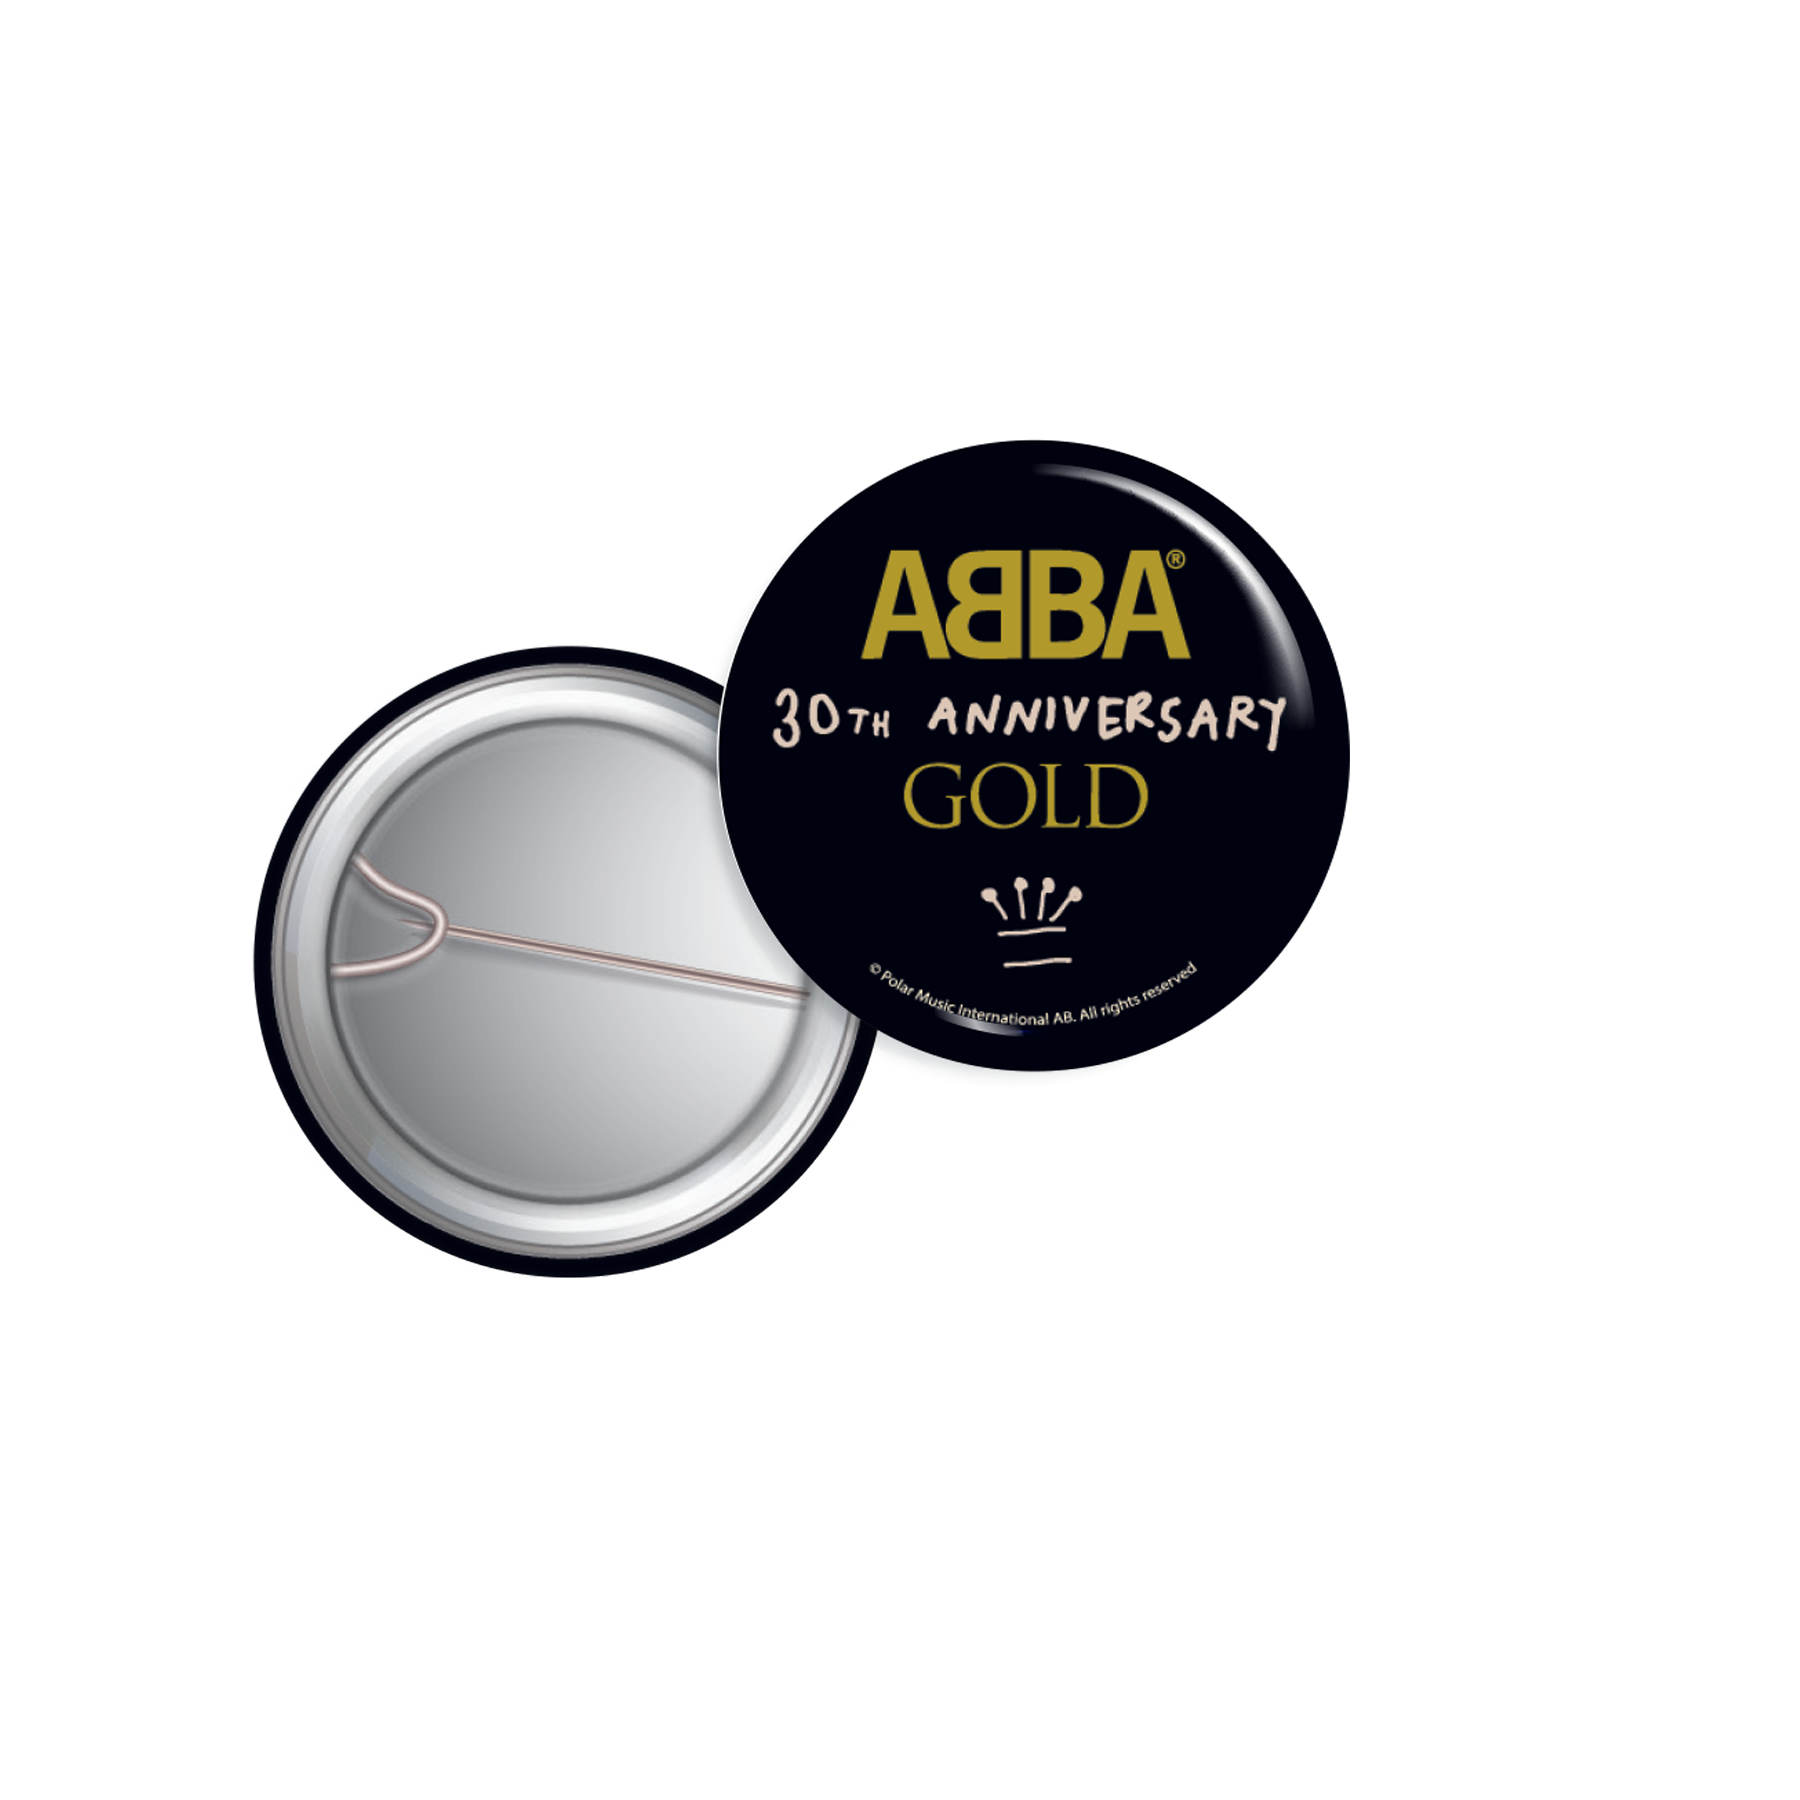 ABBA - Abba Gold Pin Badge